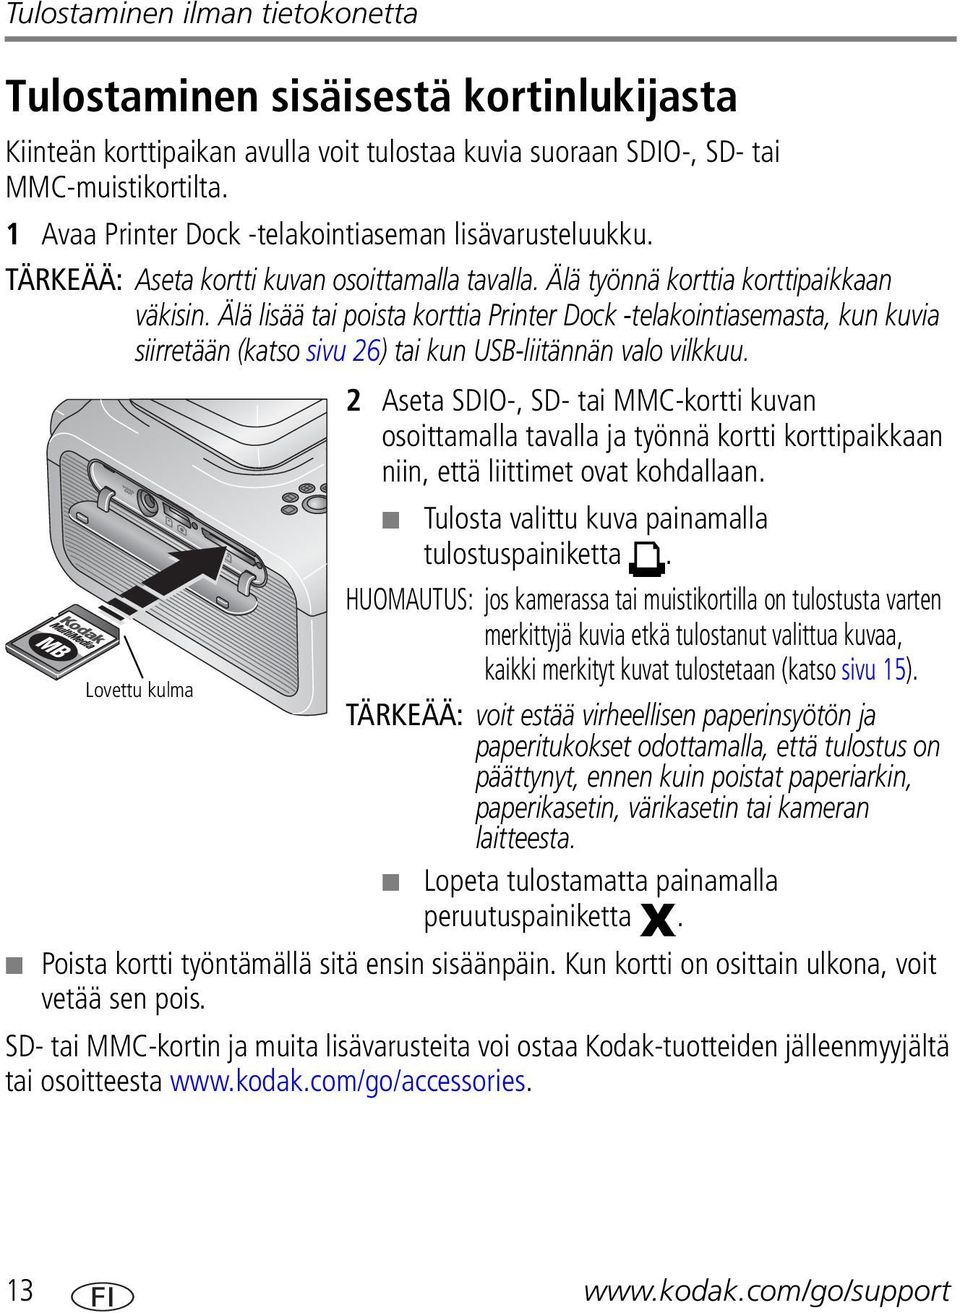 Älä lisää tai poista korttia Printer Dock -telakointiasemasta, kun kuvia siirretään (katso sivu 26) tai kun USB-liitännän valo vilkkuu.